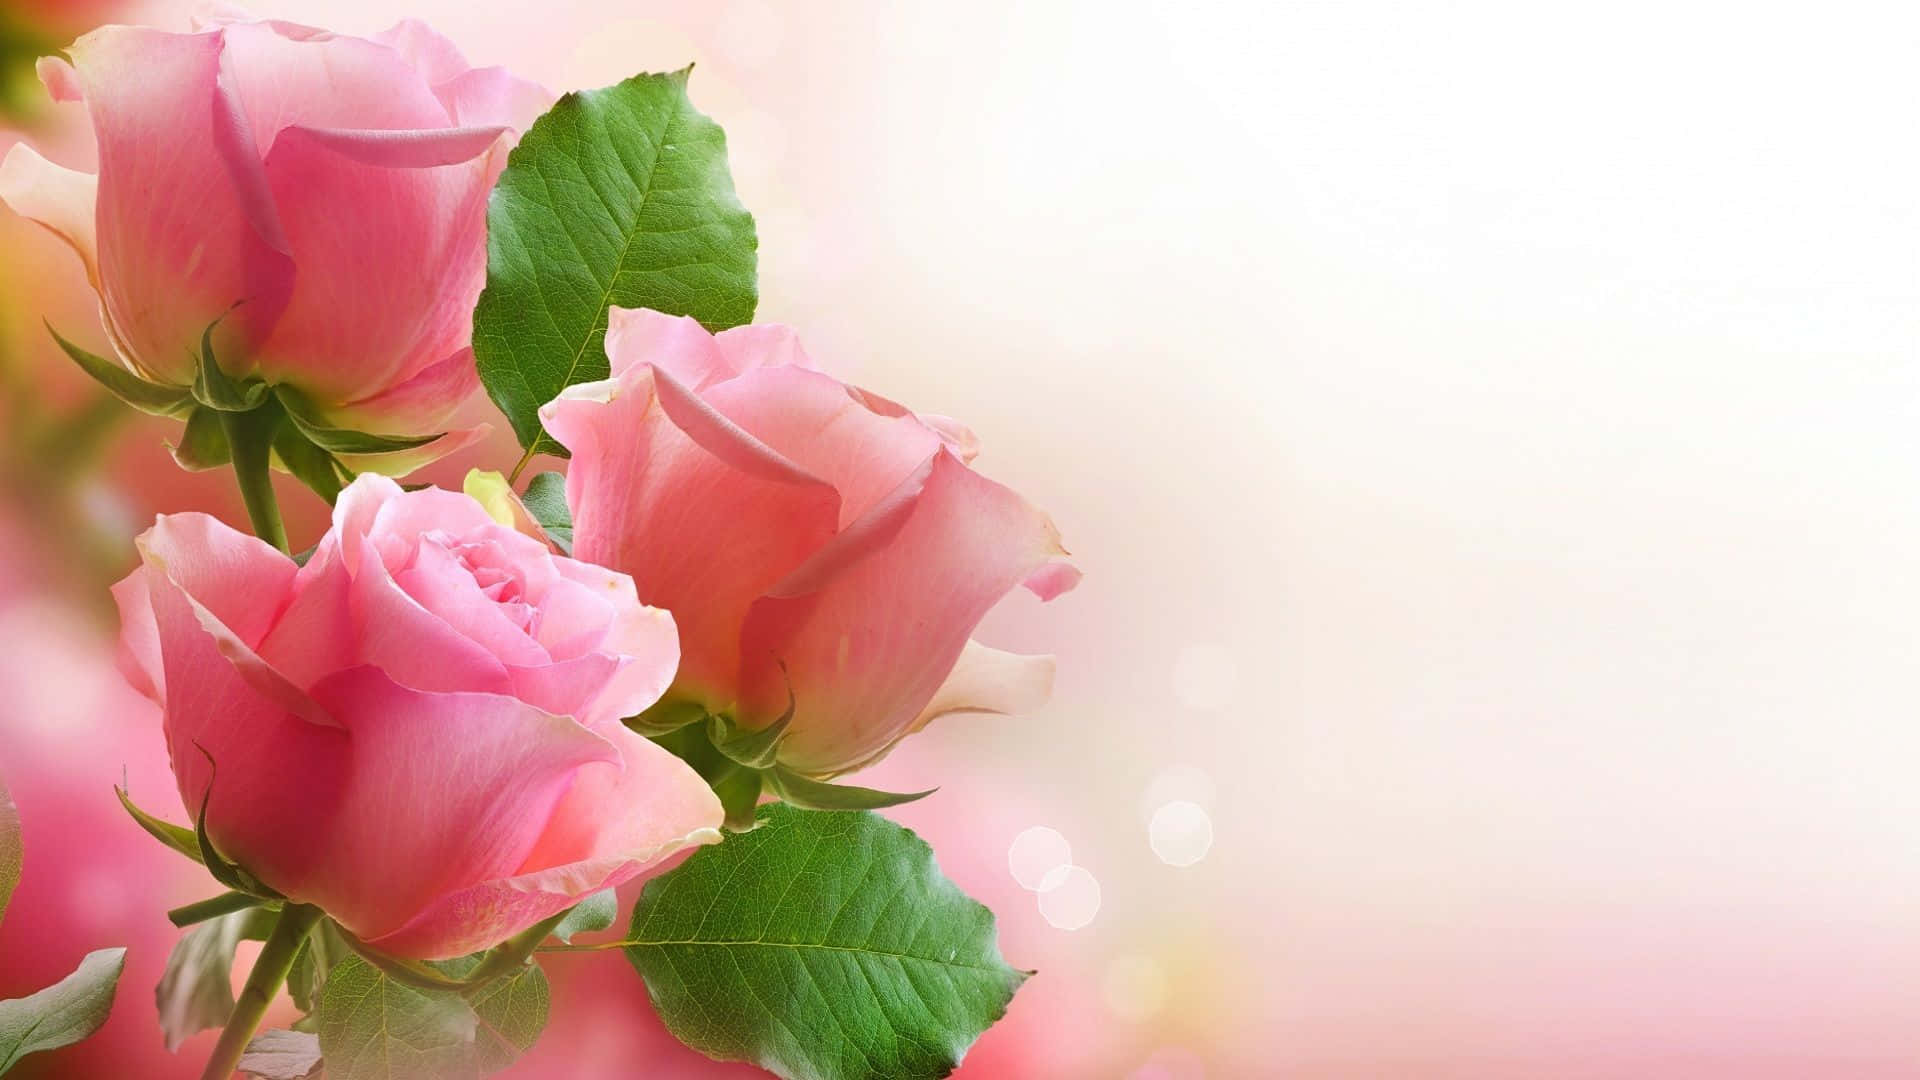 Unique, exquisite pink rose